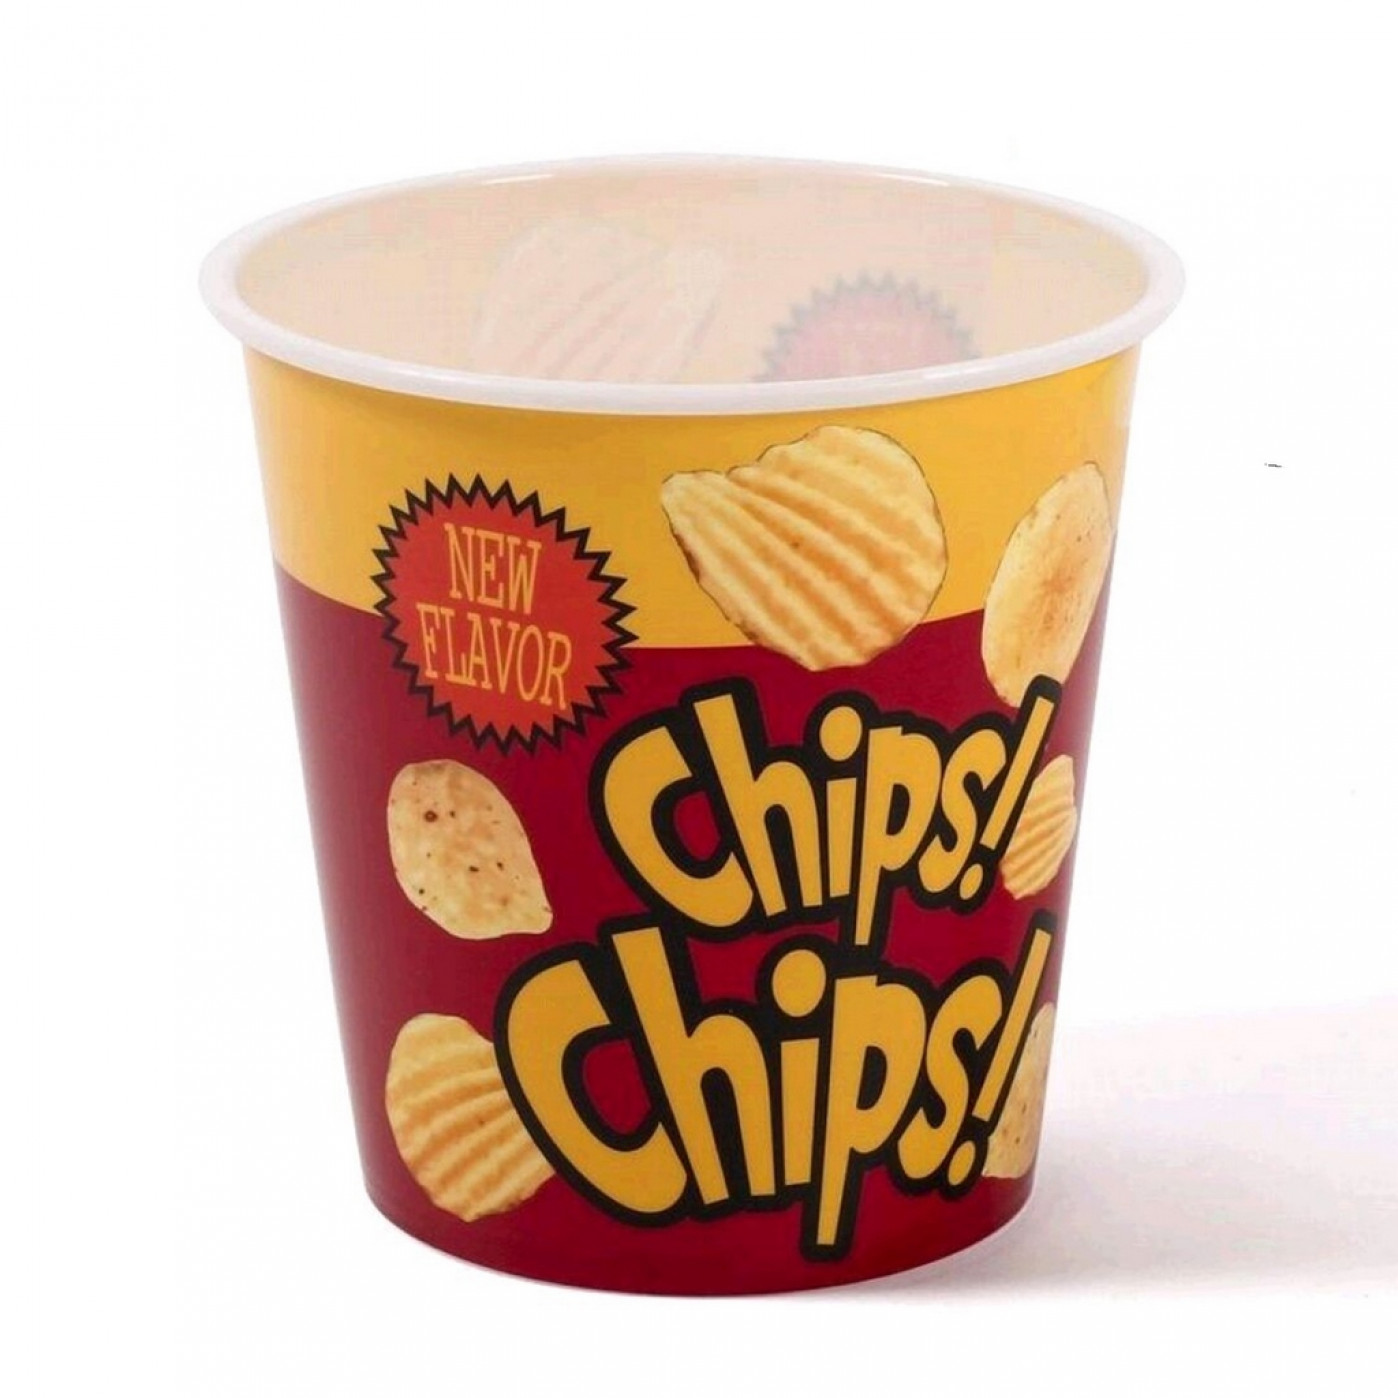 Стакан для чипсов Chips! Chips!